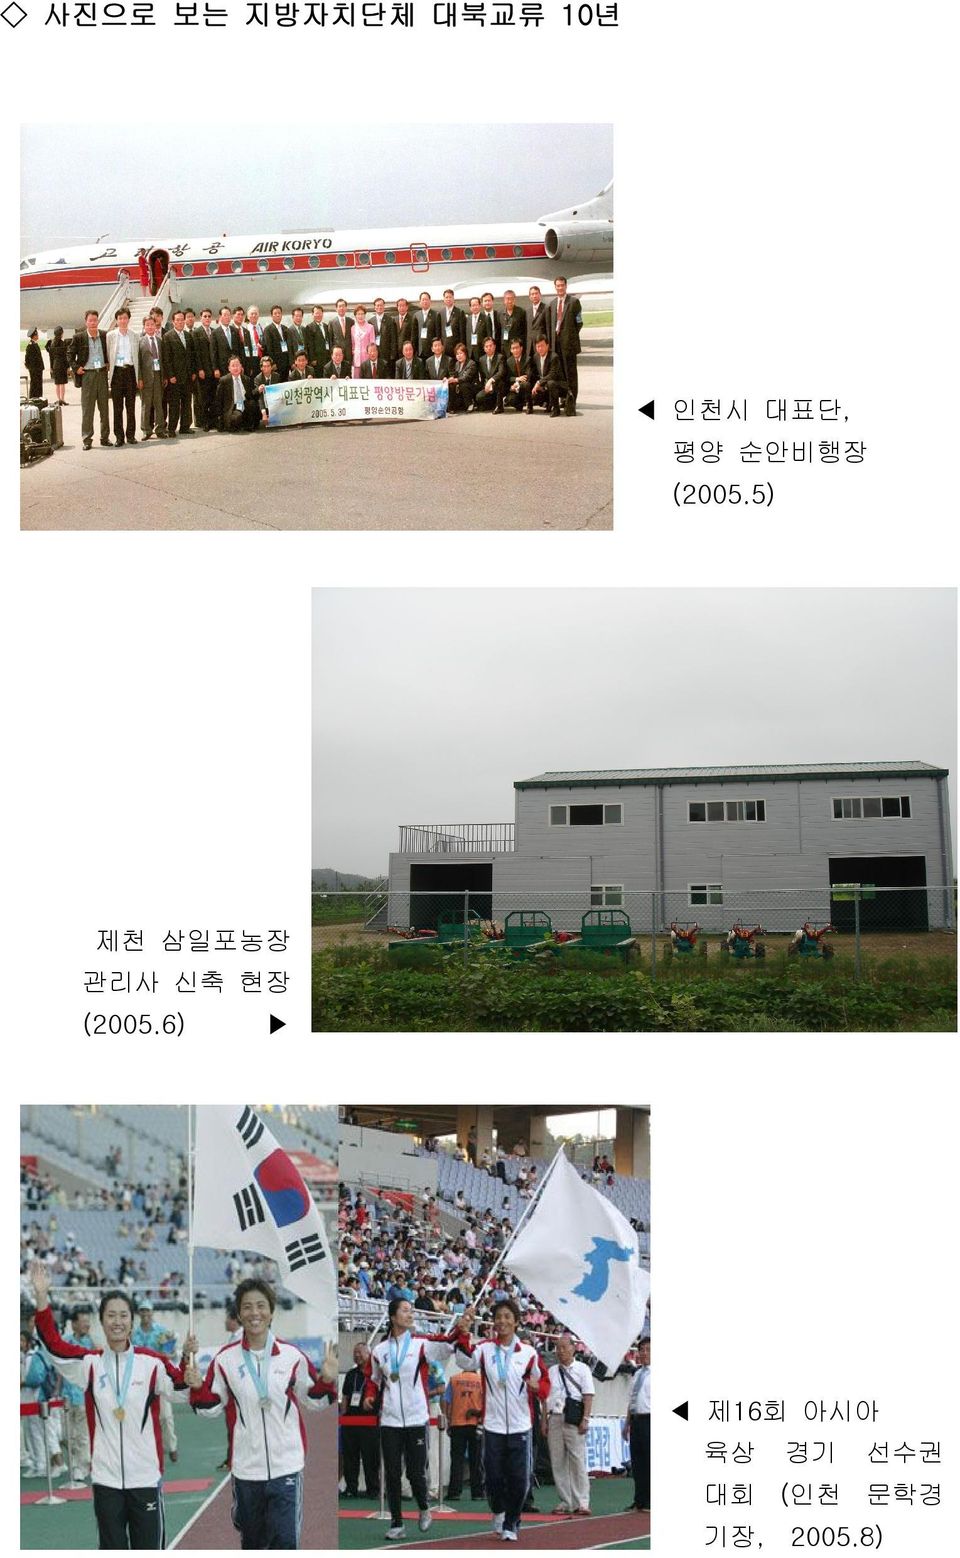 5) 제천 삼일포농장 관리사 신축 현장 (2005.